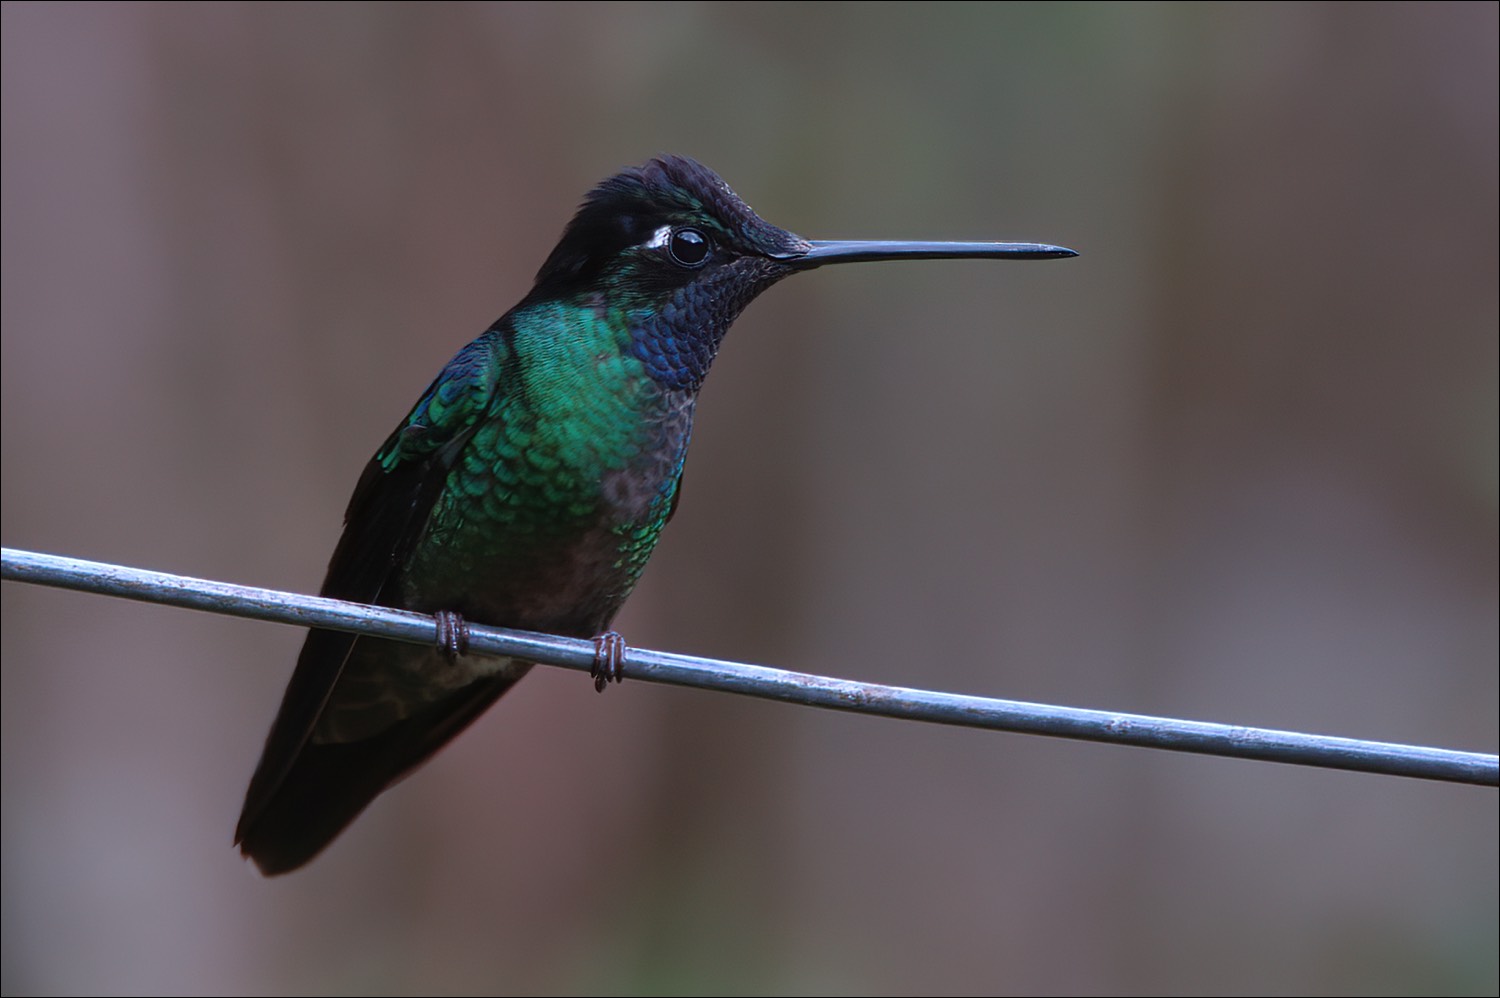 Magnificent Hummingbird (Rivoli-kolibri)